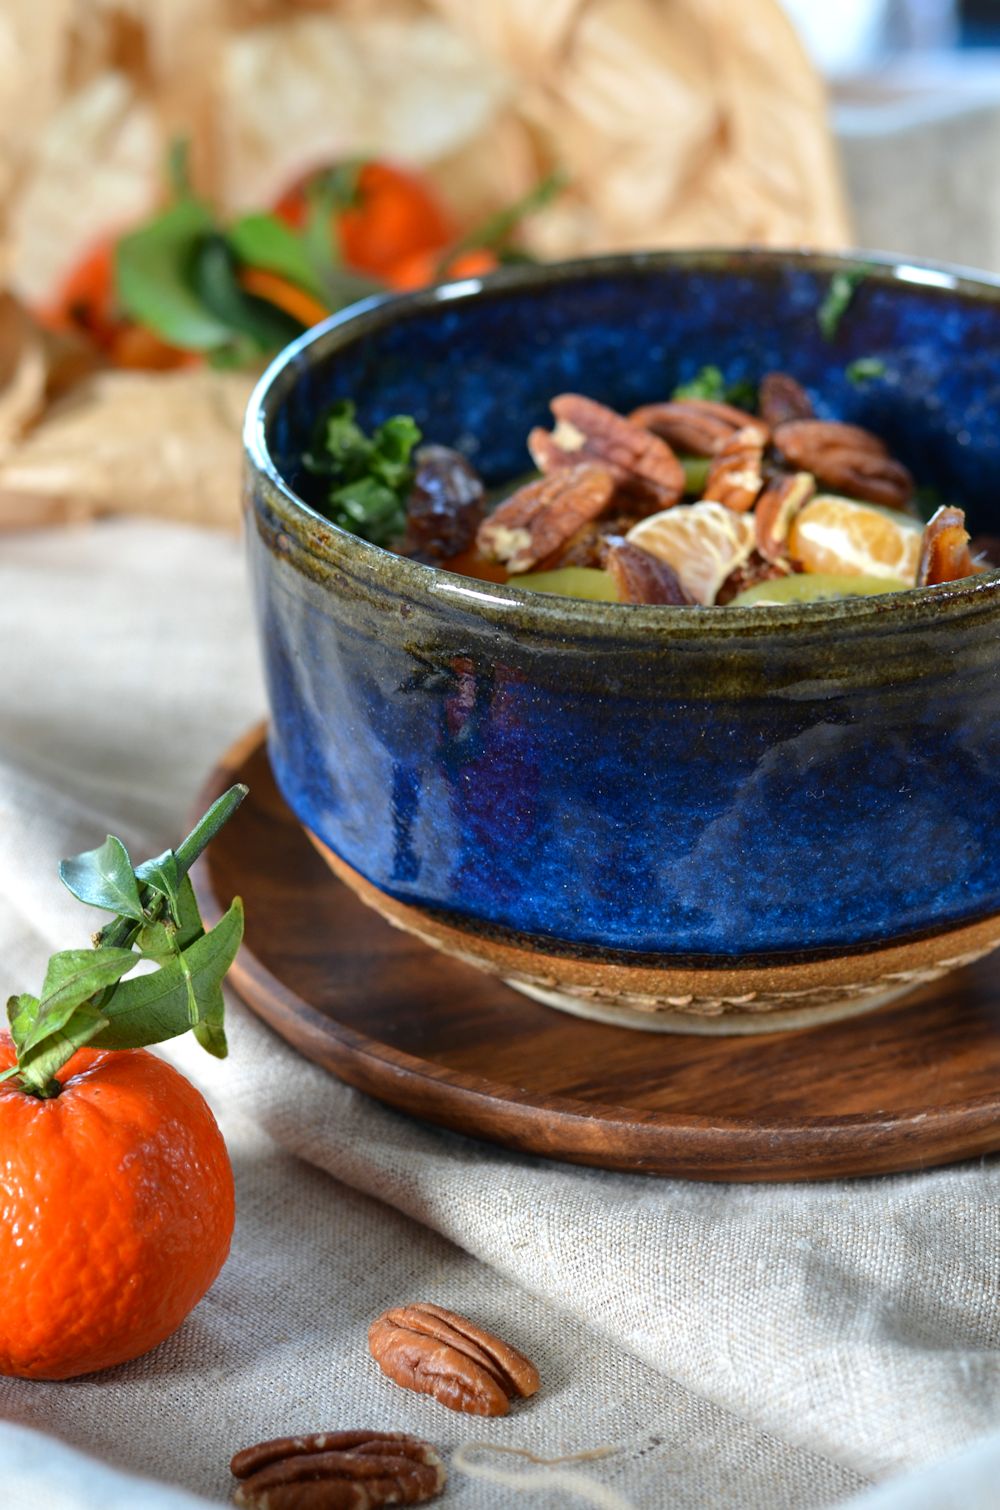 Salade de chou kale, quinoa, noix de pécan et fruits